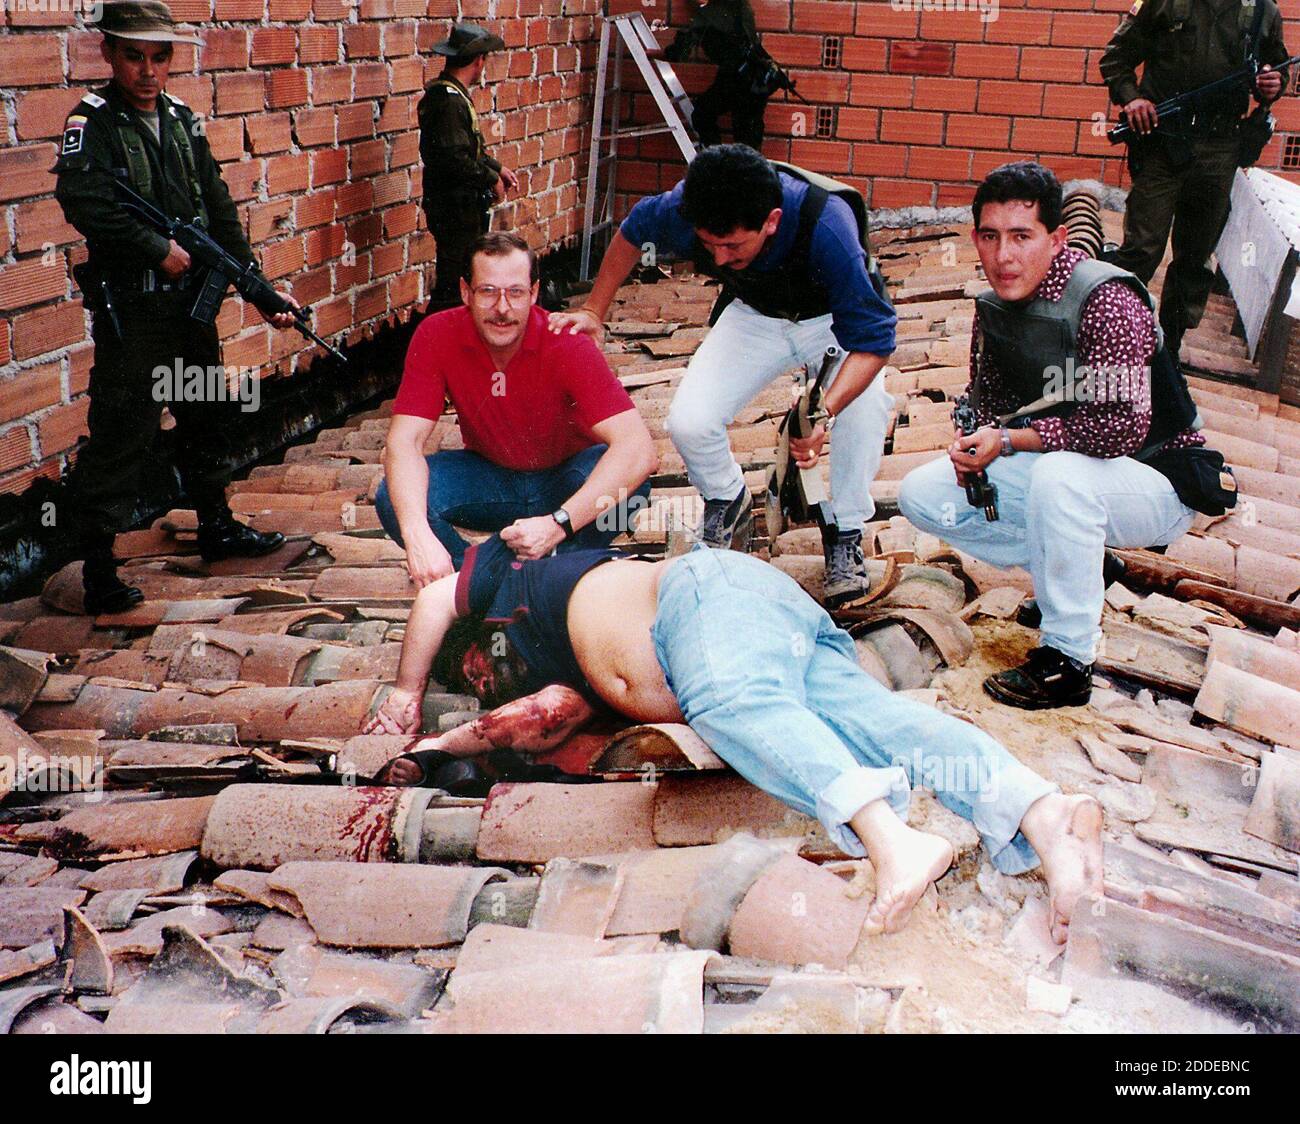 PAS DE FILM, PAS DE VIDÉO, PAS de TV, PAS DE DOCUMENTAIRE - DOCUMENT -  (novembre 9) Steve Murphy, de la DEA des Etats-Unis, en chemise rouge, pose  avec le corps de